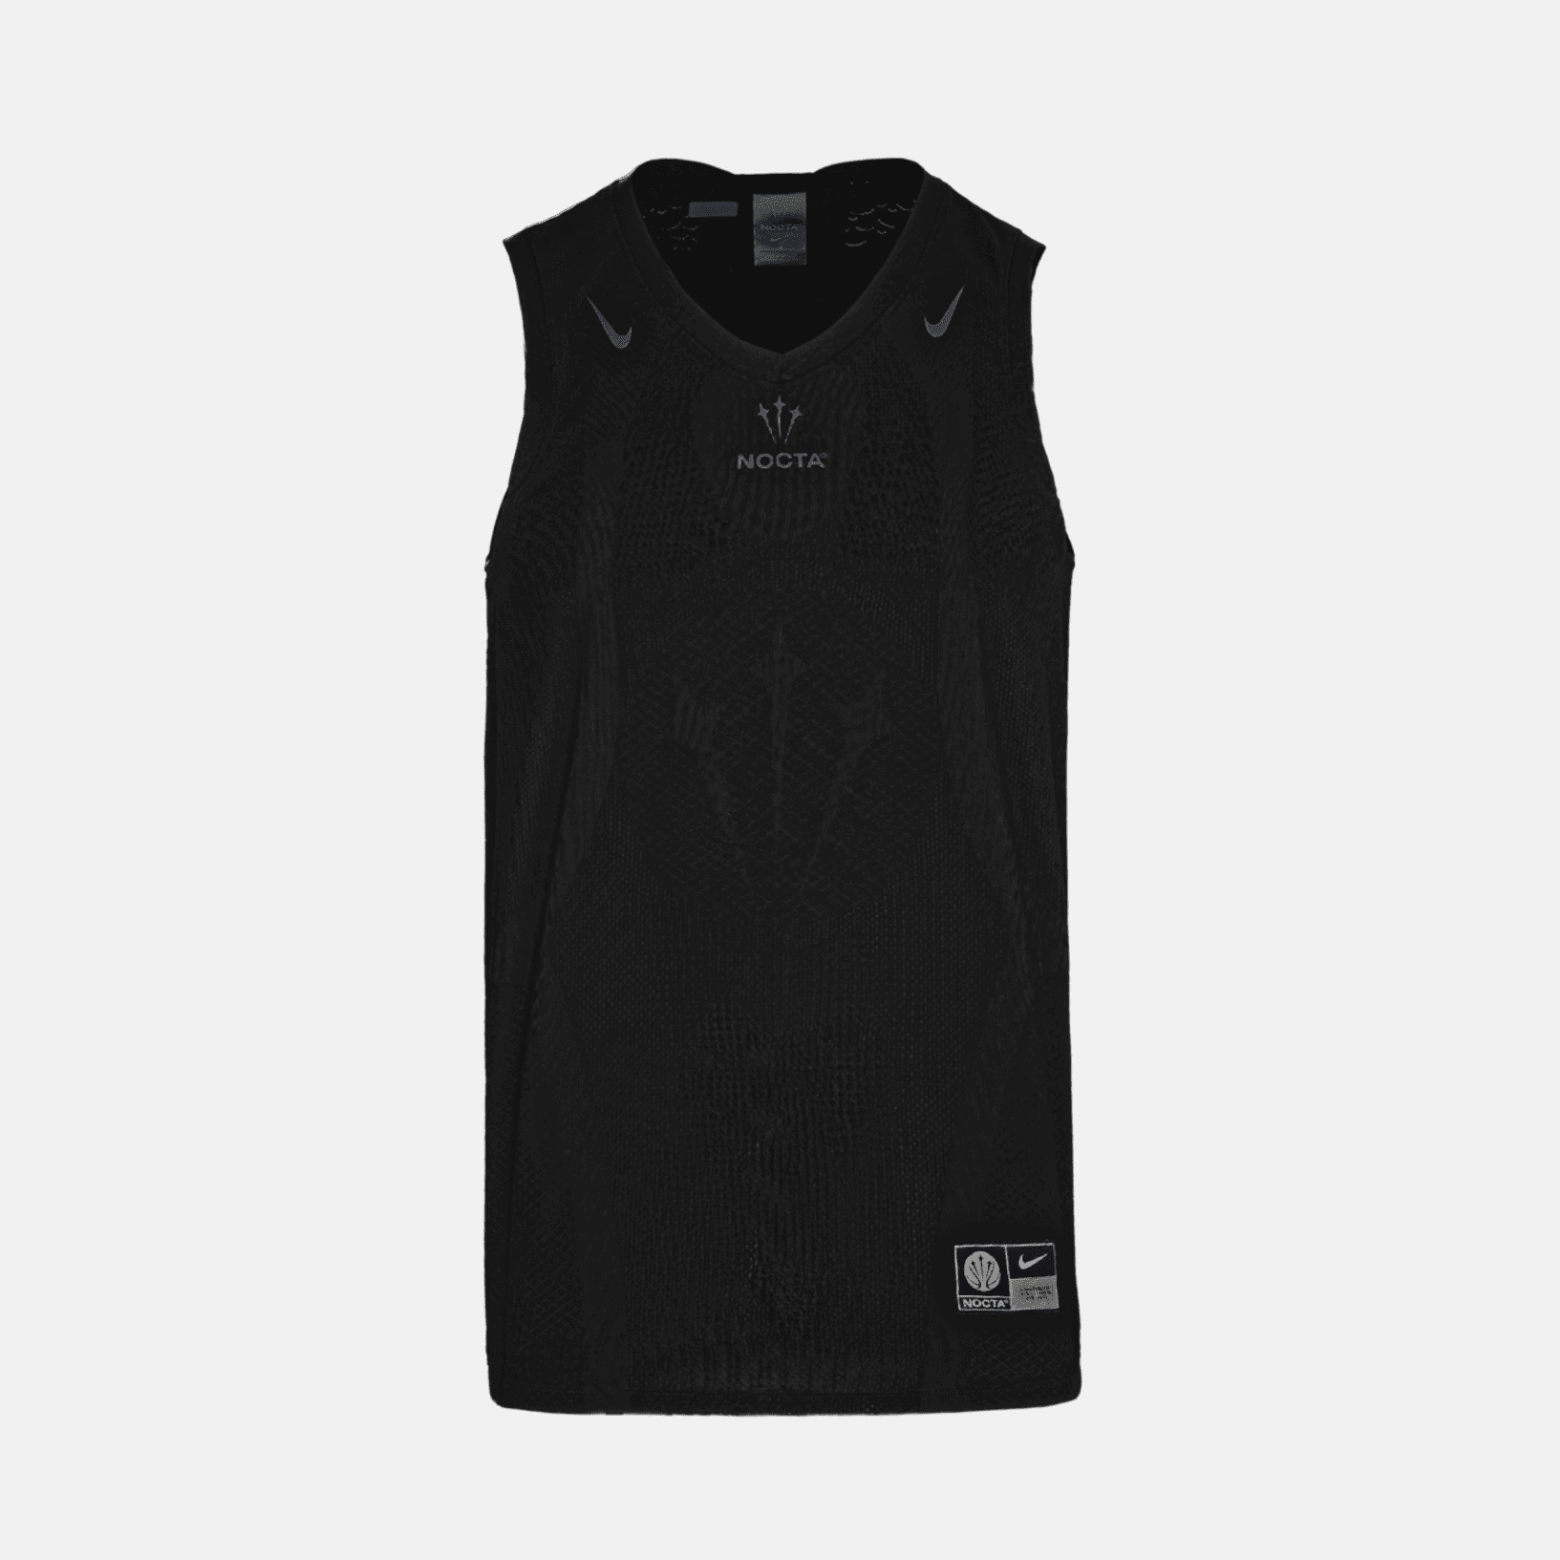 T-shirt de basket-ball Nike x NOCTA Noir